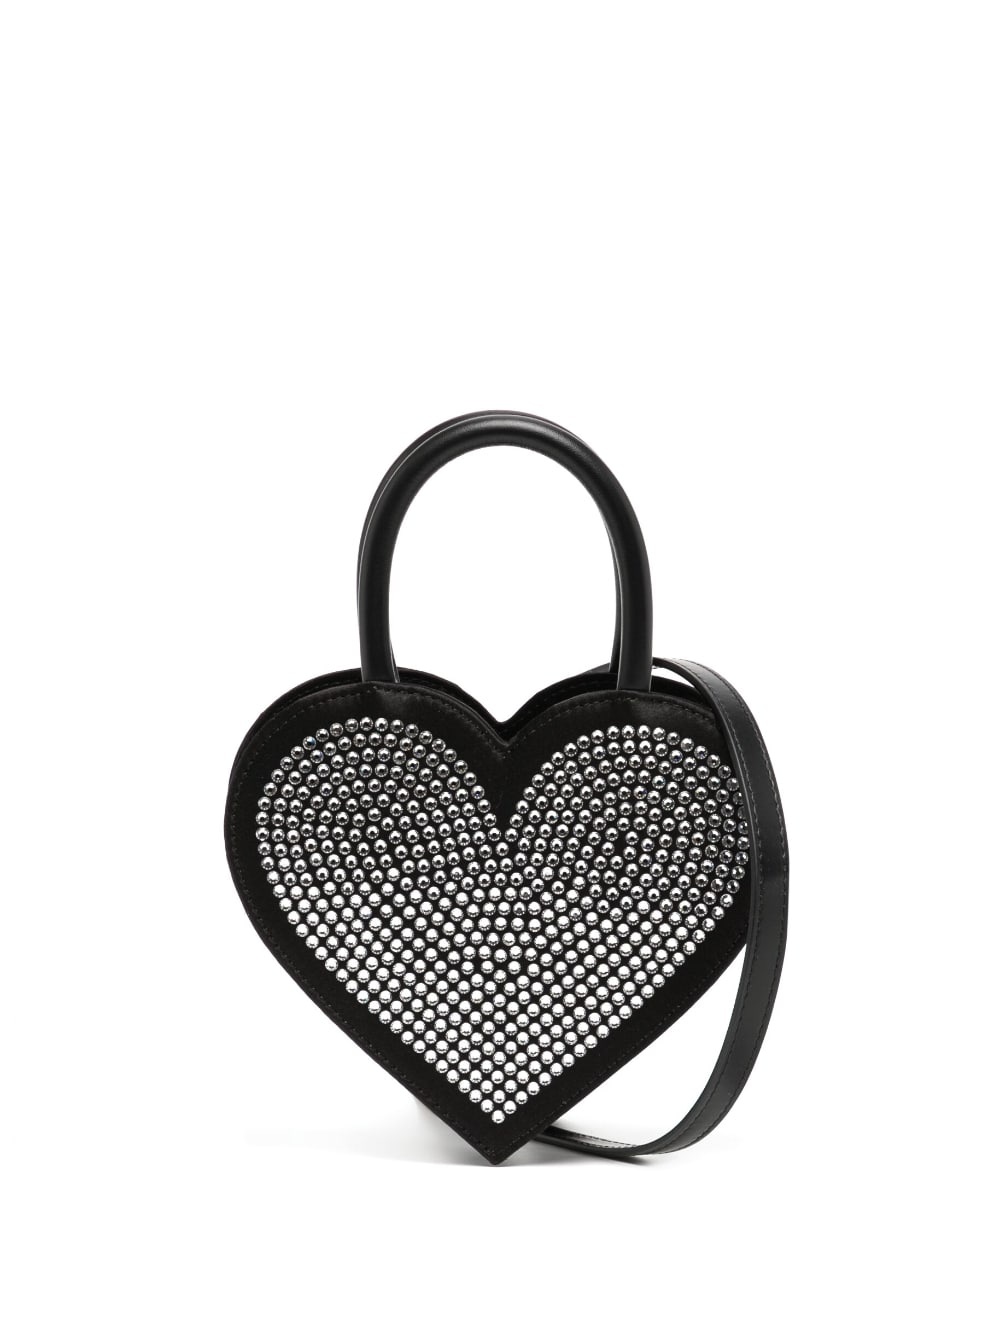 crystal-embellished heart-shape bag - 1